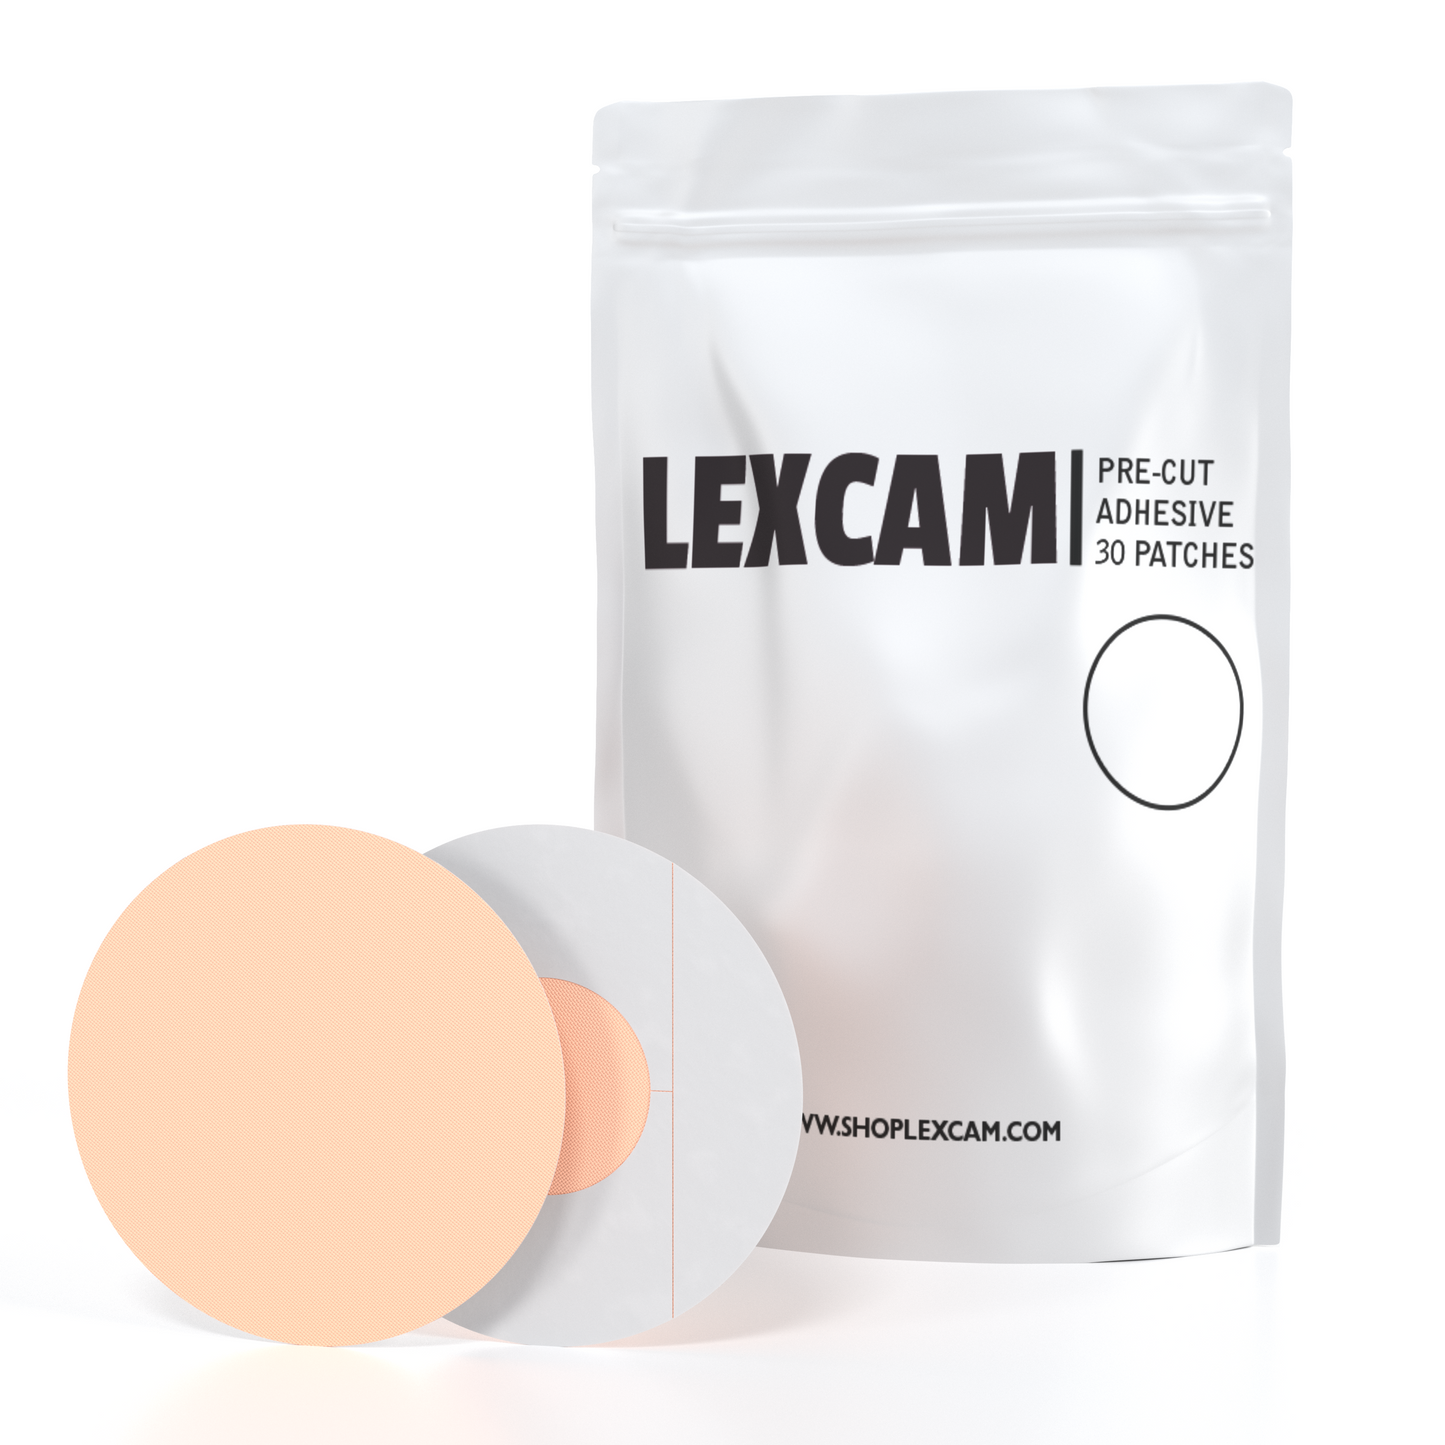 Lexcam Adhesive Patches pre-cut for Dexcom G7, Freestyle Libre 2 3, Color Tan, (20)